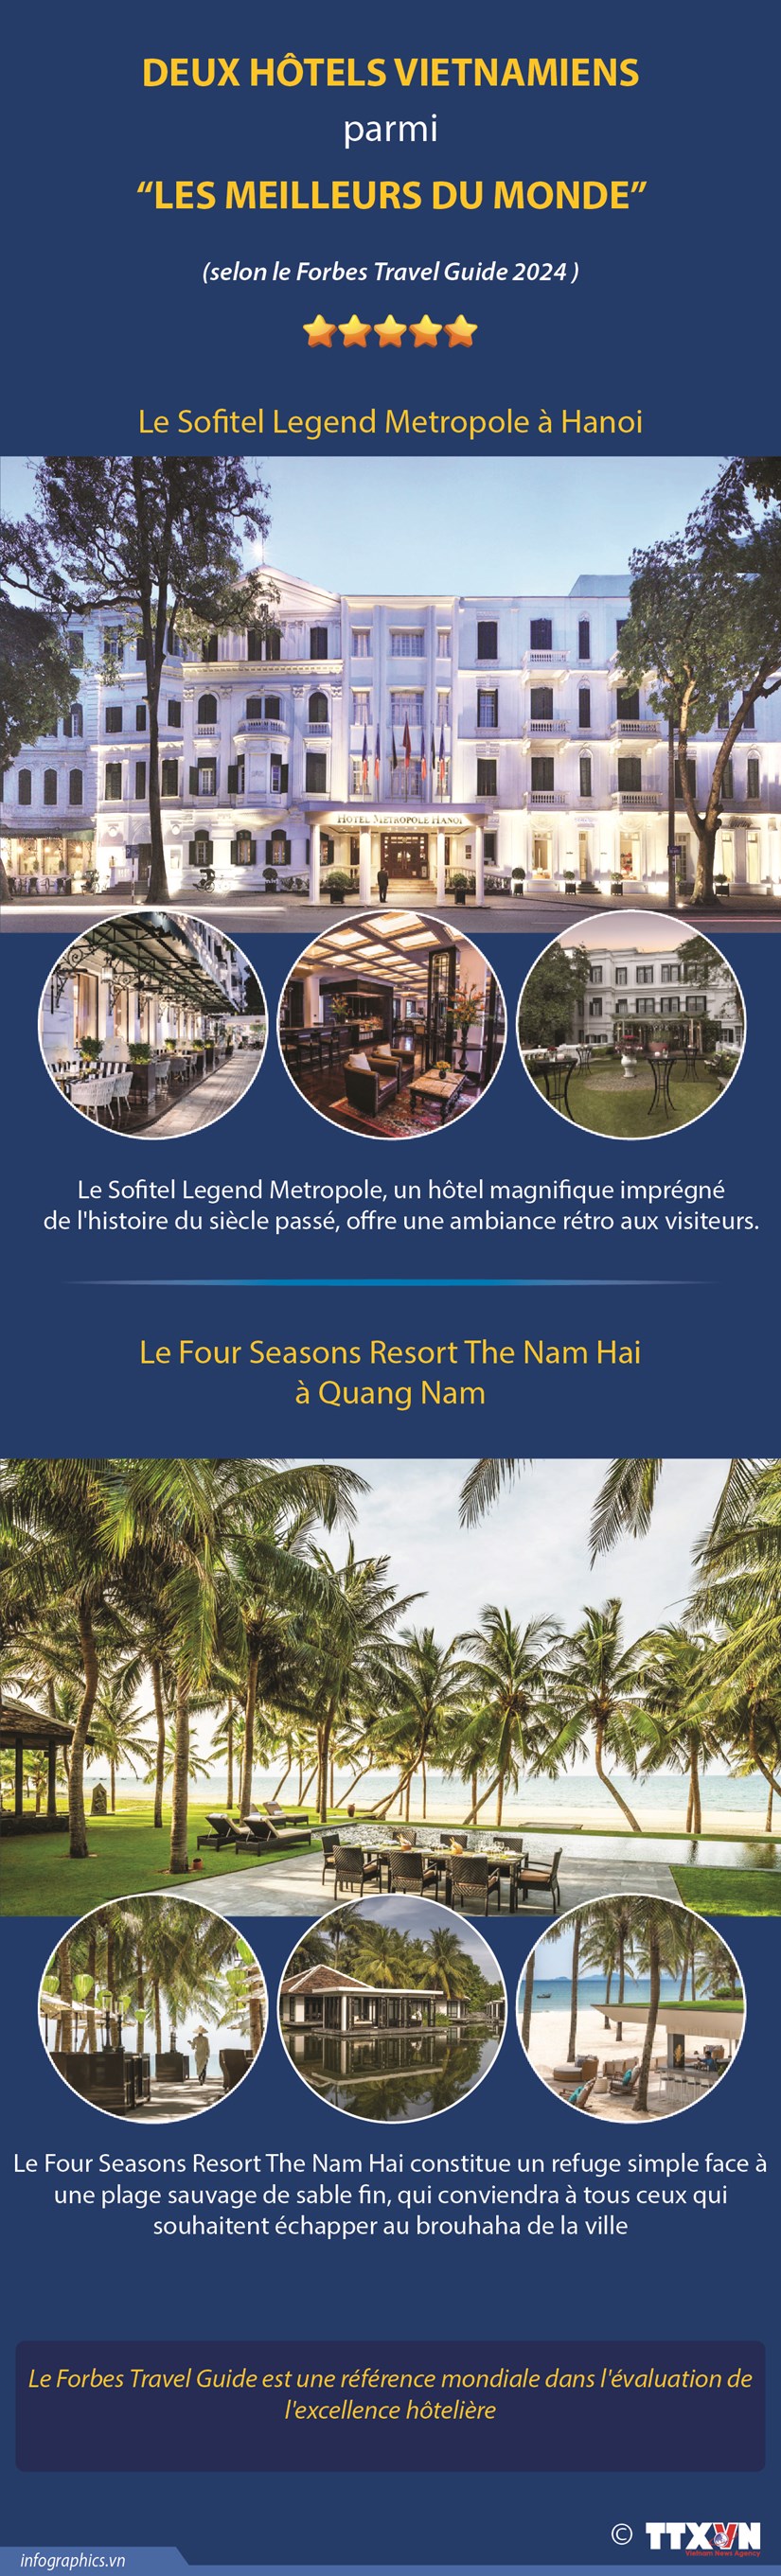 Deux hotels vietnamiens parmi “les meilleurs du monde” hinh anh 1